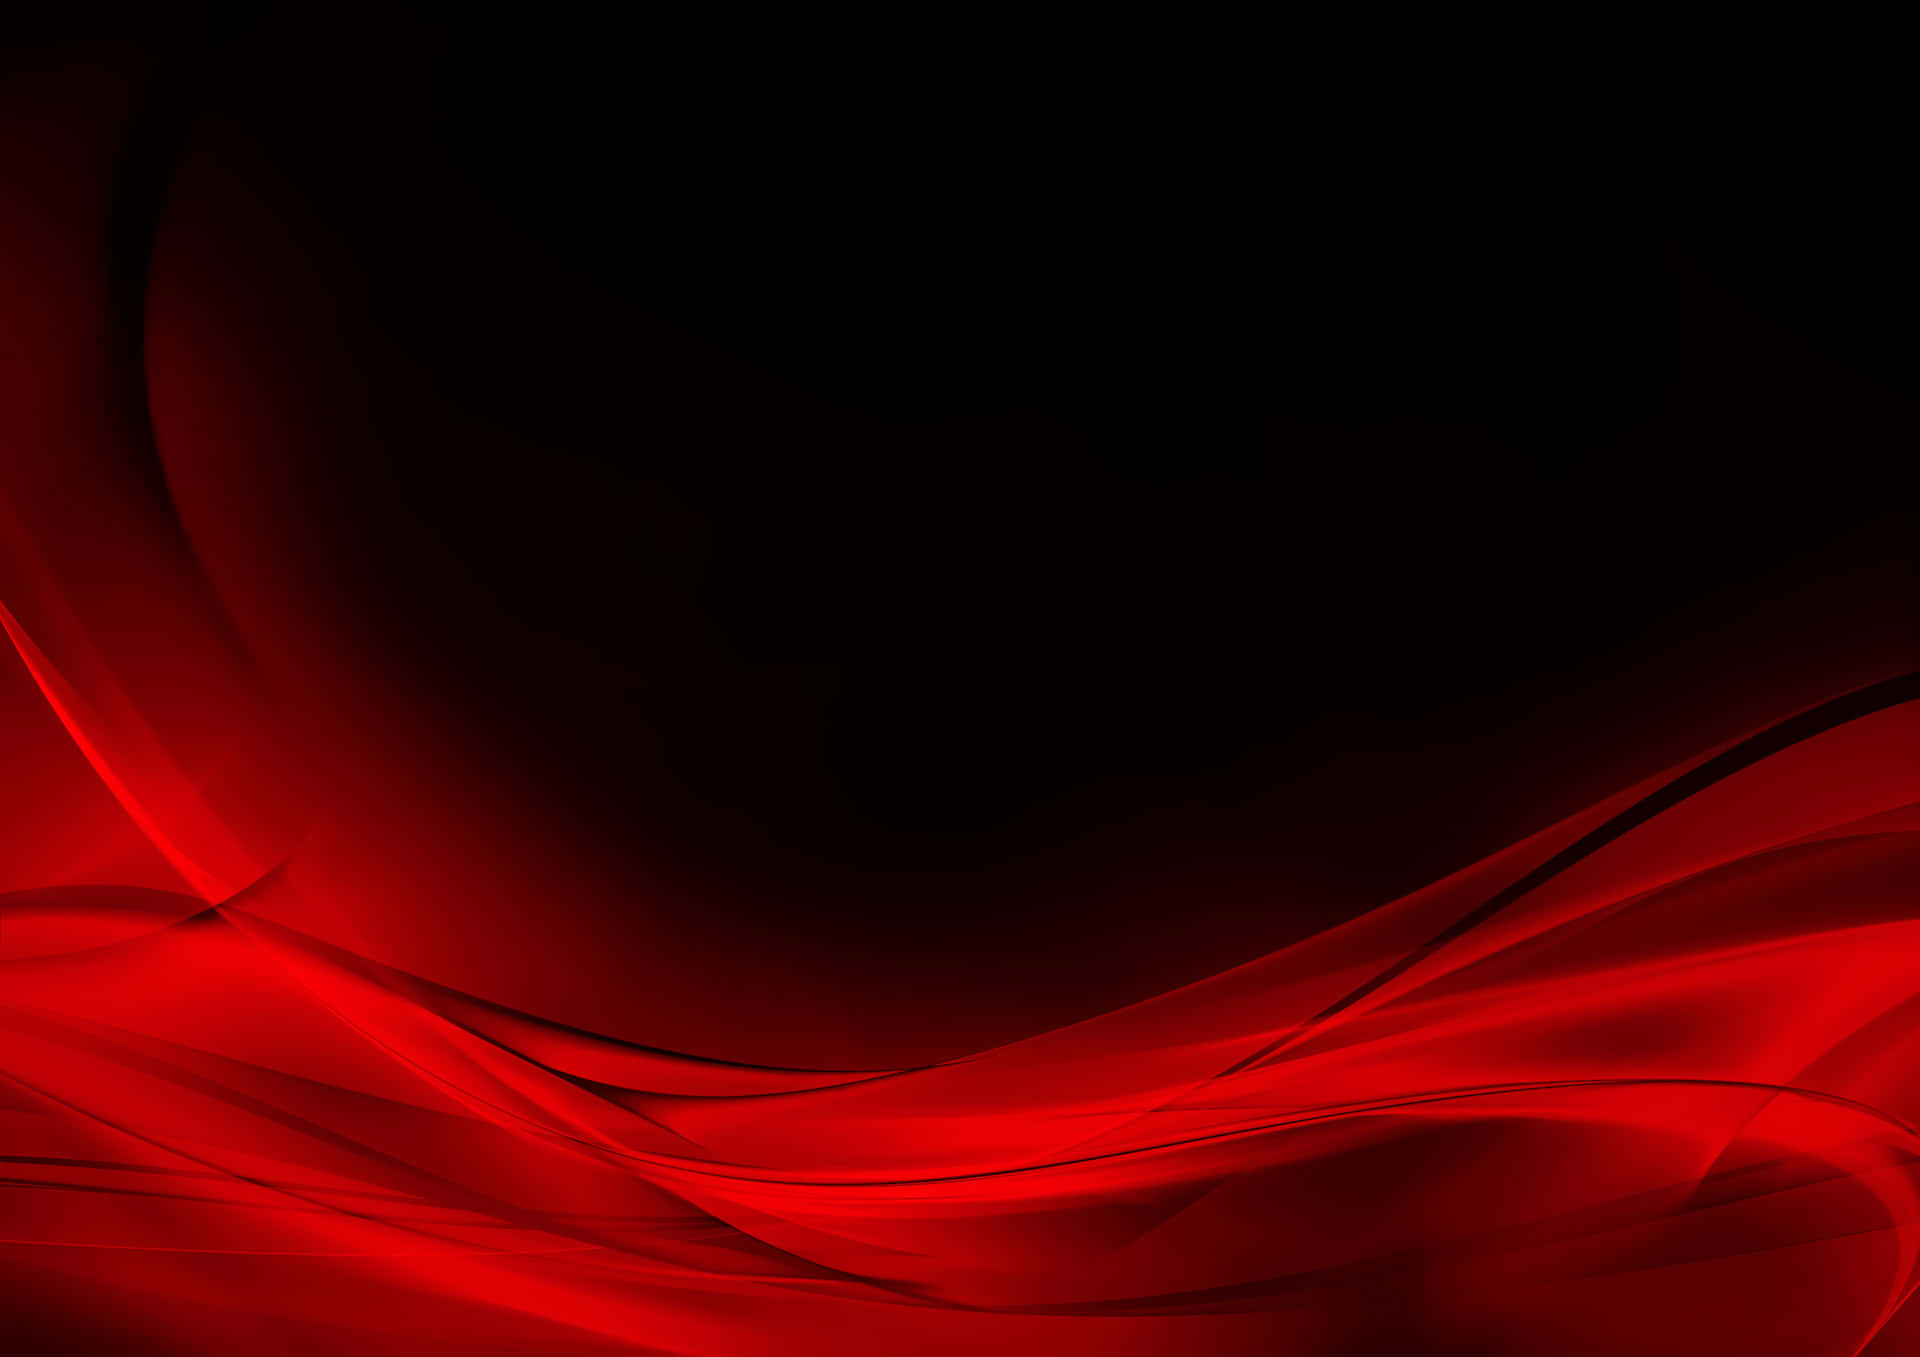 Modellodi Colorazione In Rosso Vivo E Nero Su Sfondo In 1080p